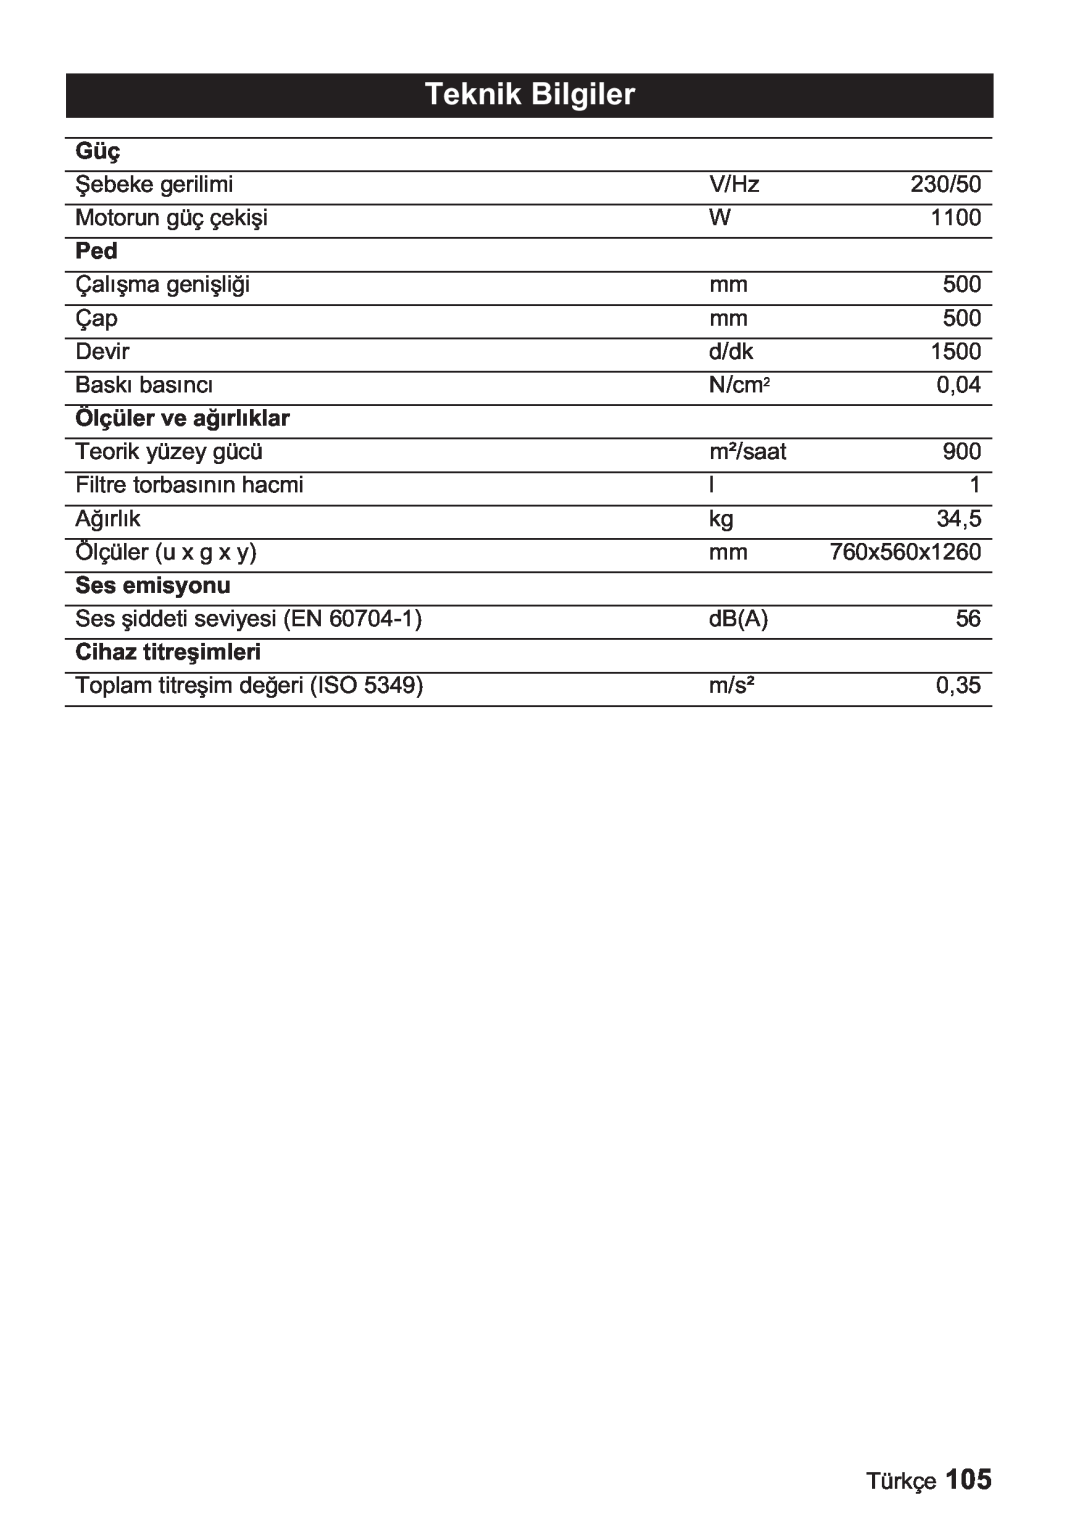 Karcher BDP 50, BDP 1500 manual Teknik Bilgiler, Ölçüler ve al, Ses emisyonu, Cihaz titreimleri 